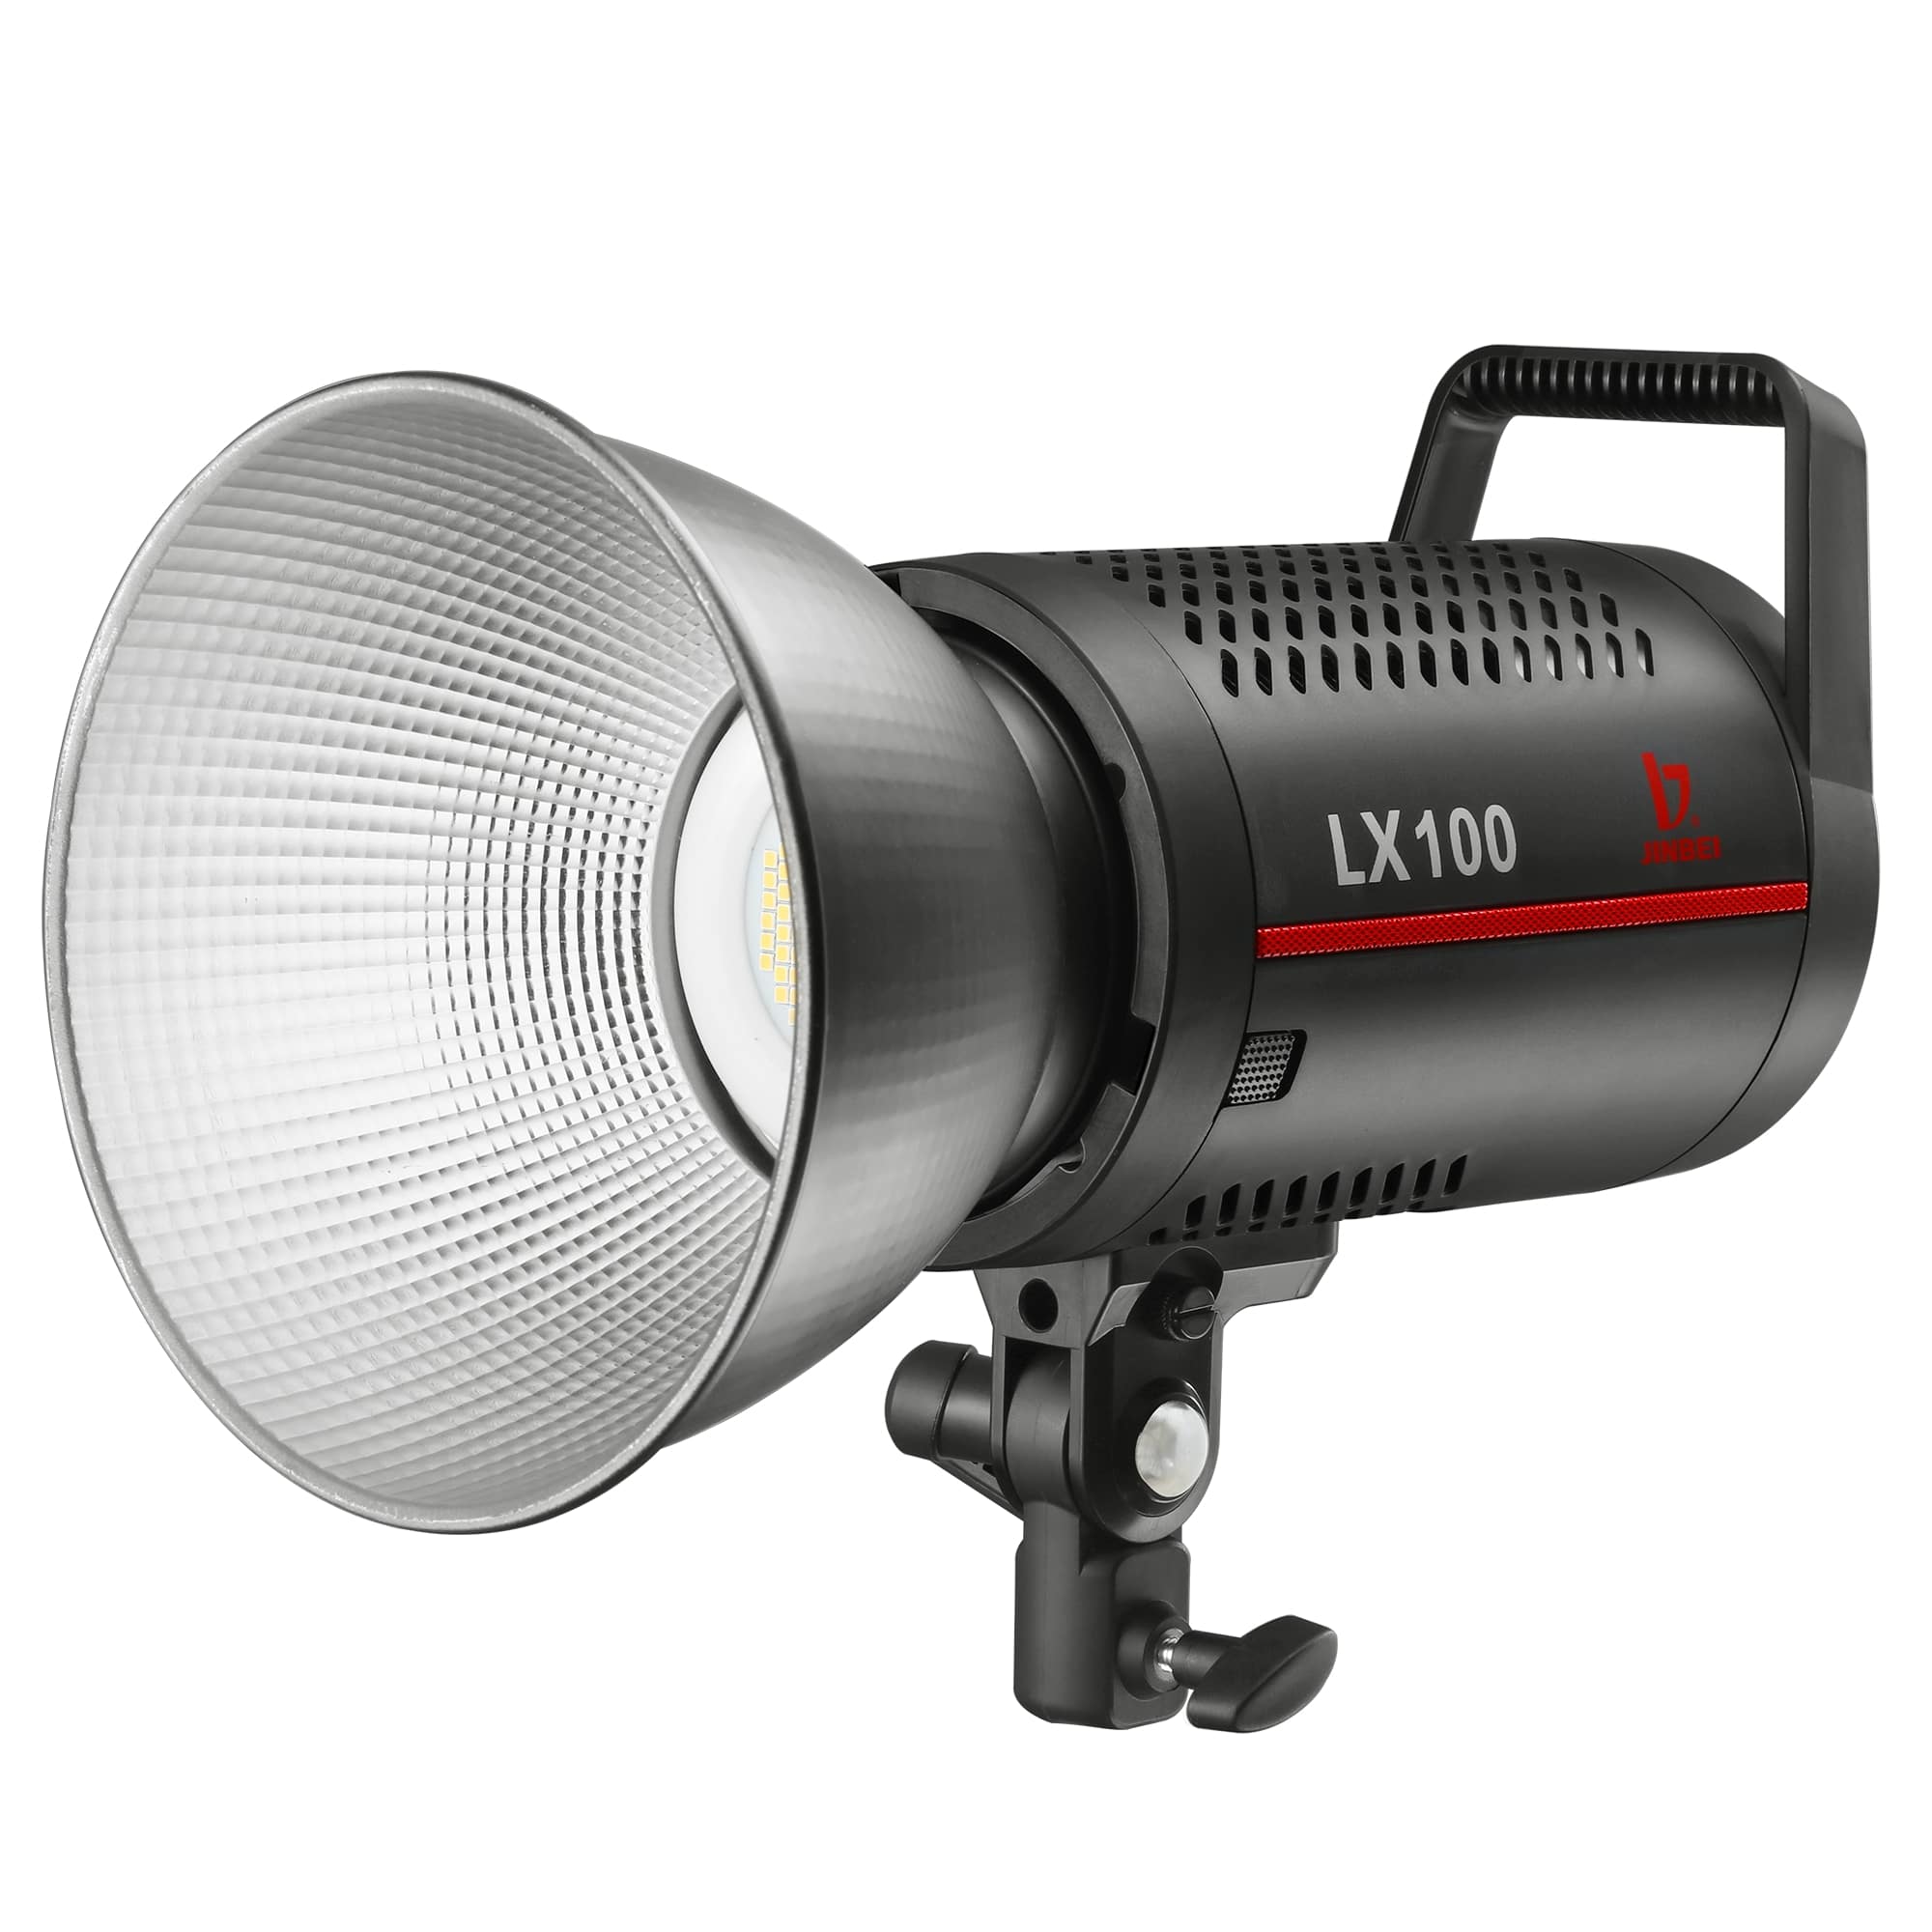 Produktfoto LX-100 LED-Dauerlicht von Jinbei